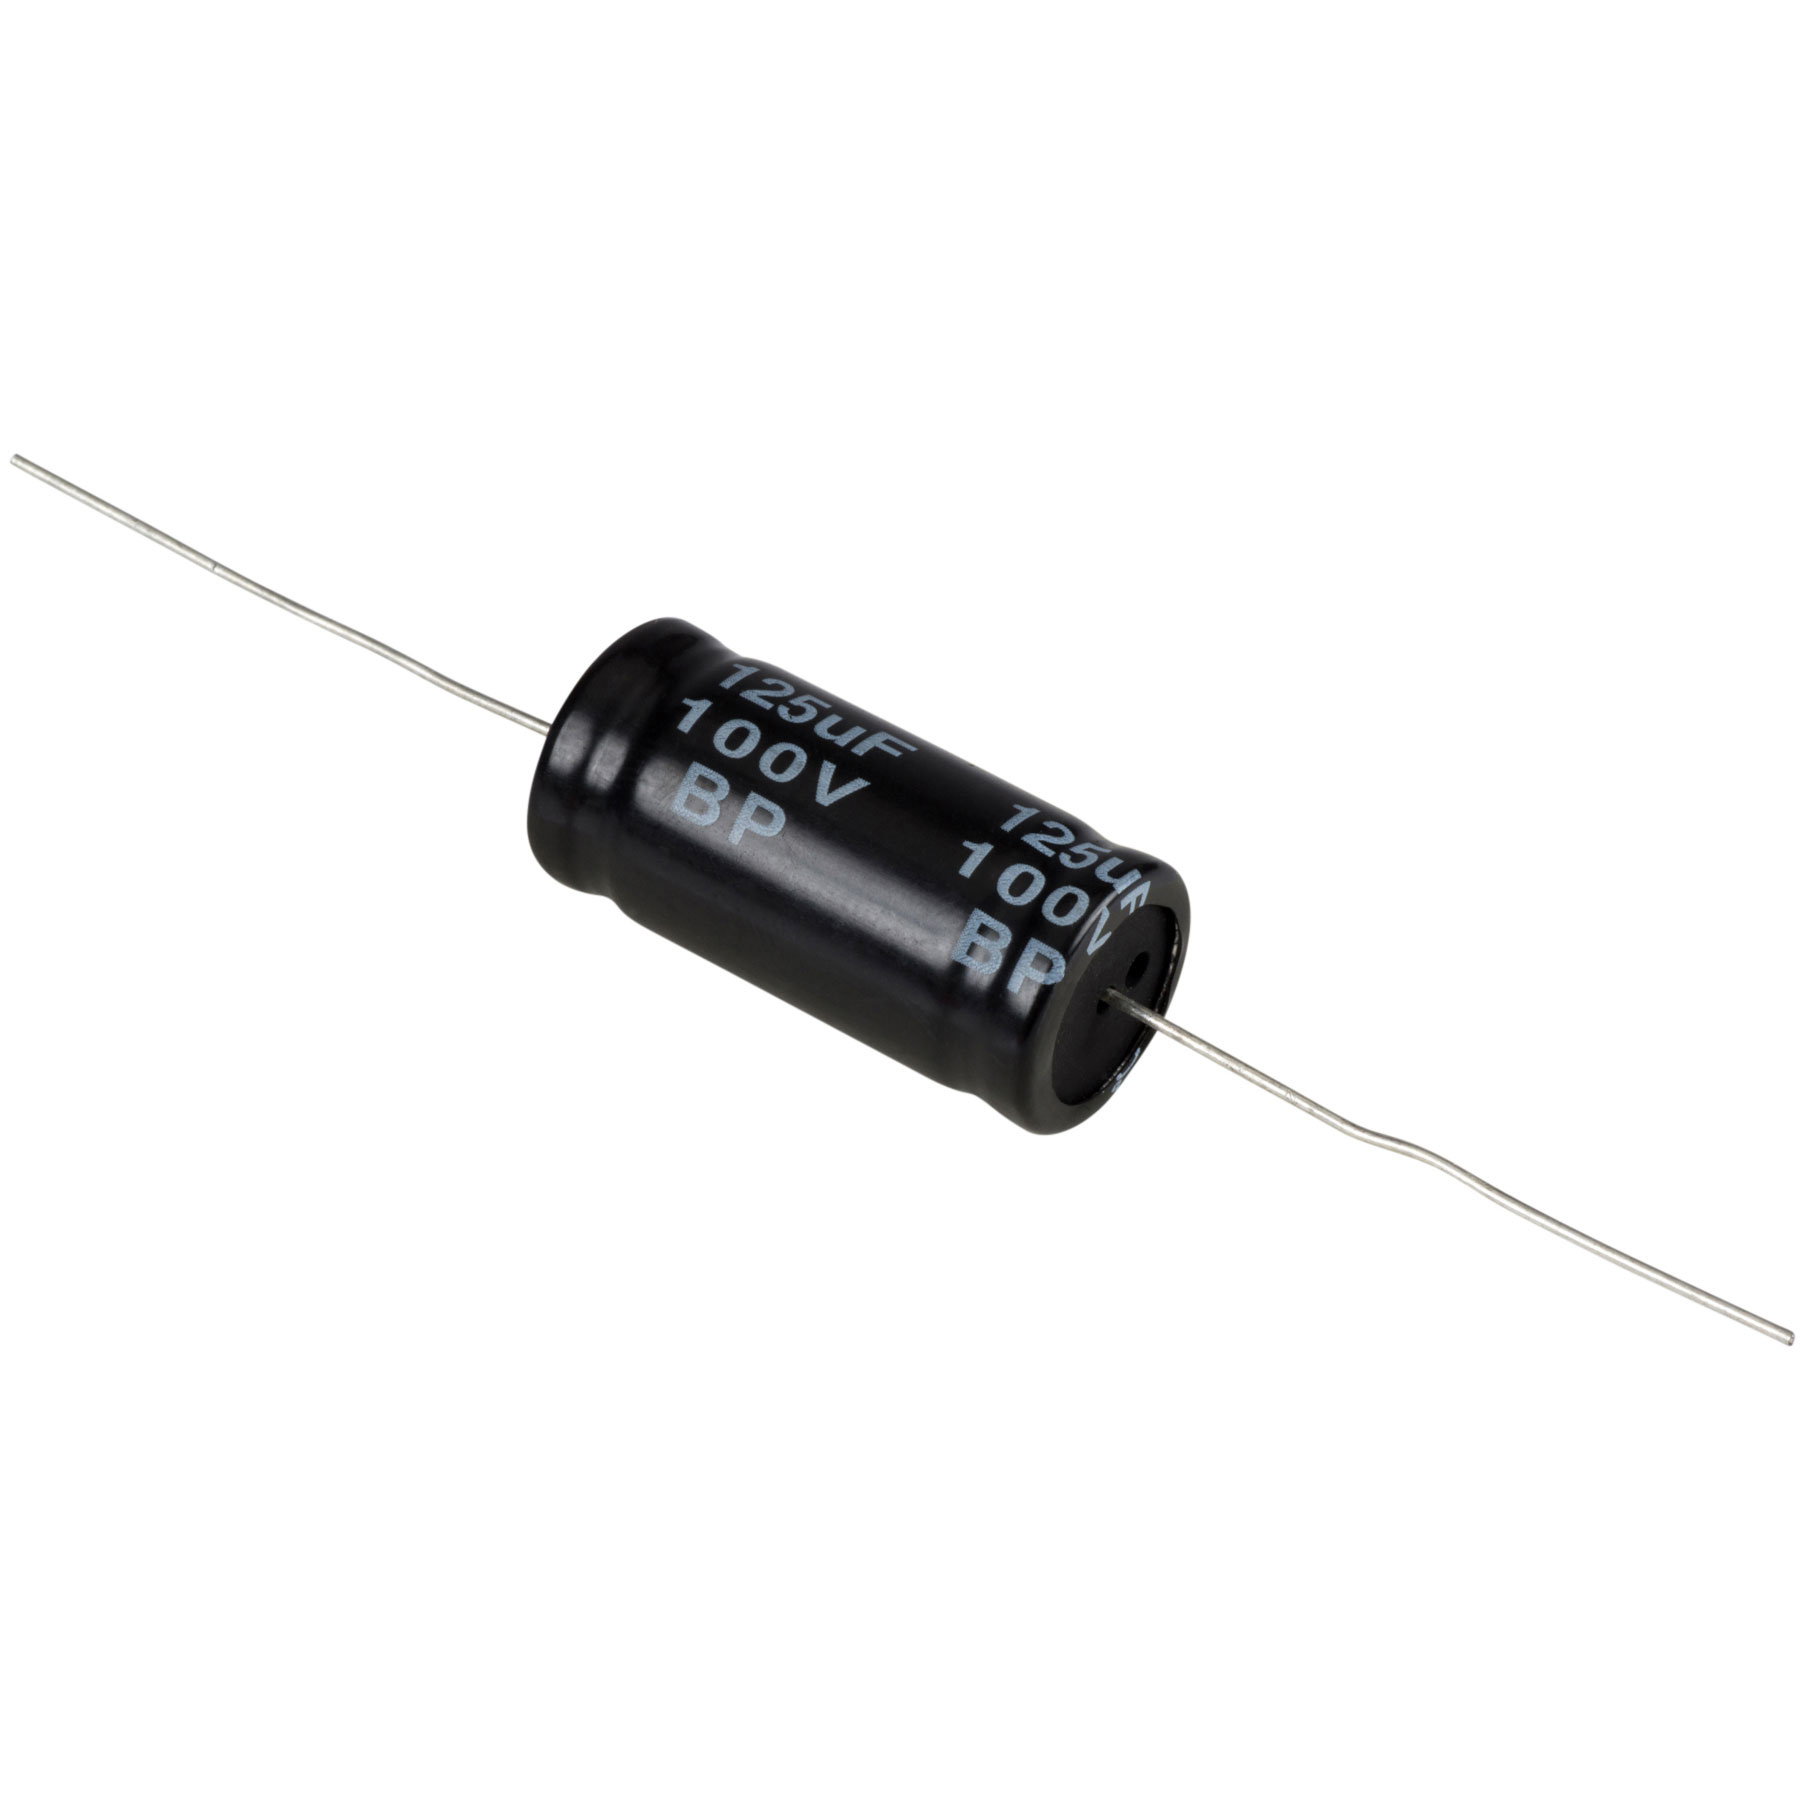 Condensatoare - Condensator electrolitic bipolar 125 µF | 10% | 100 V, audioclub.ro